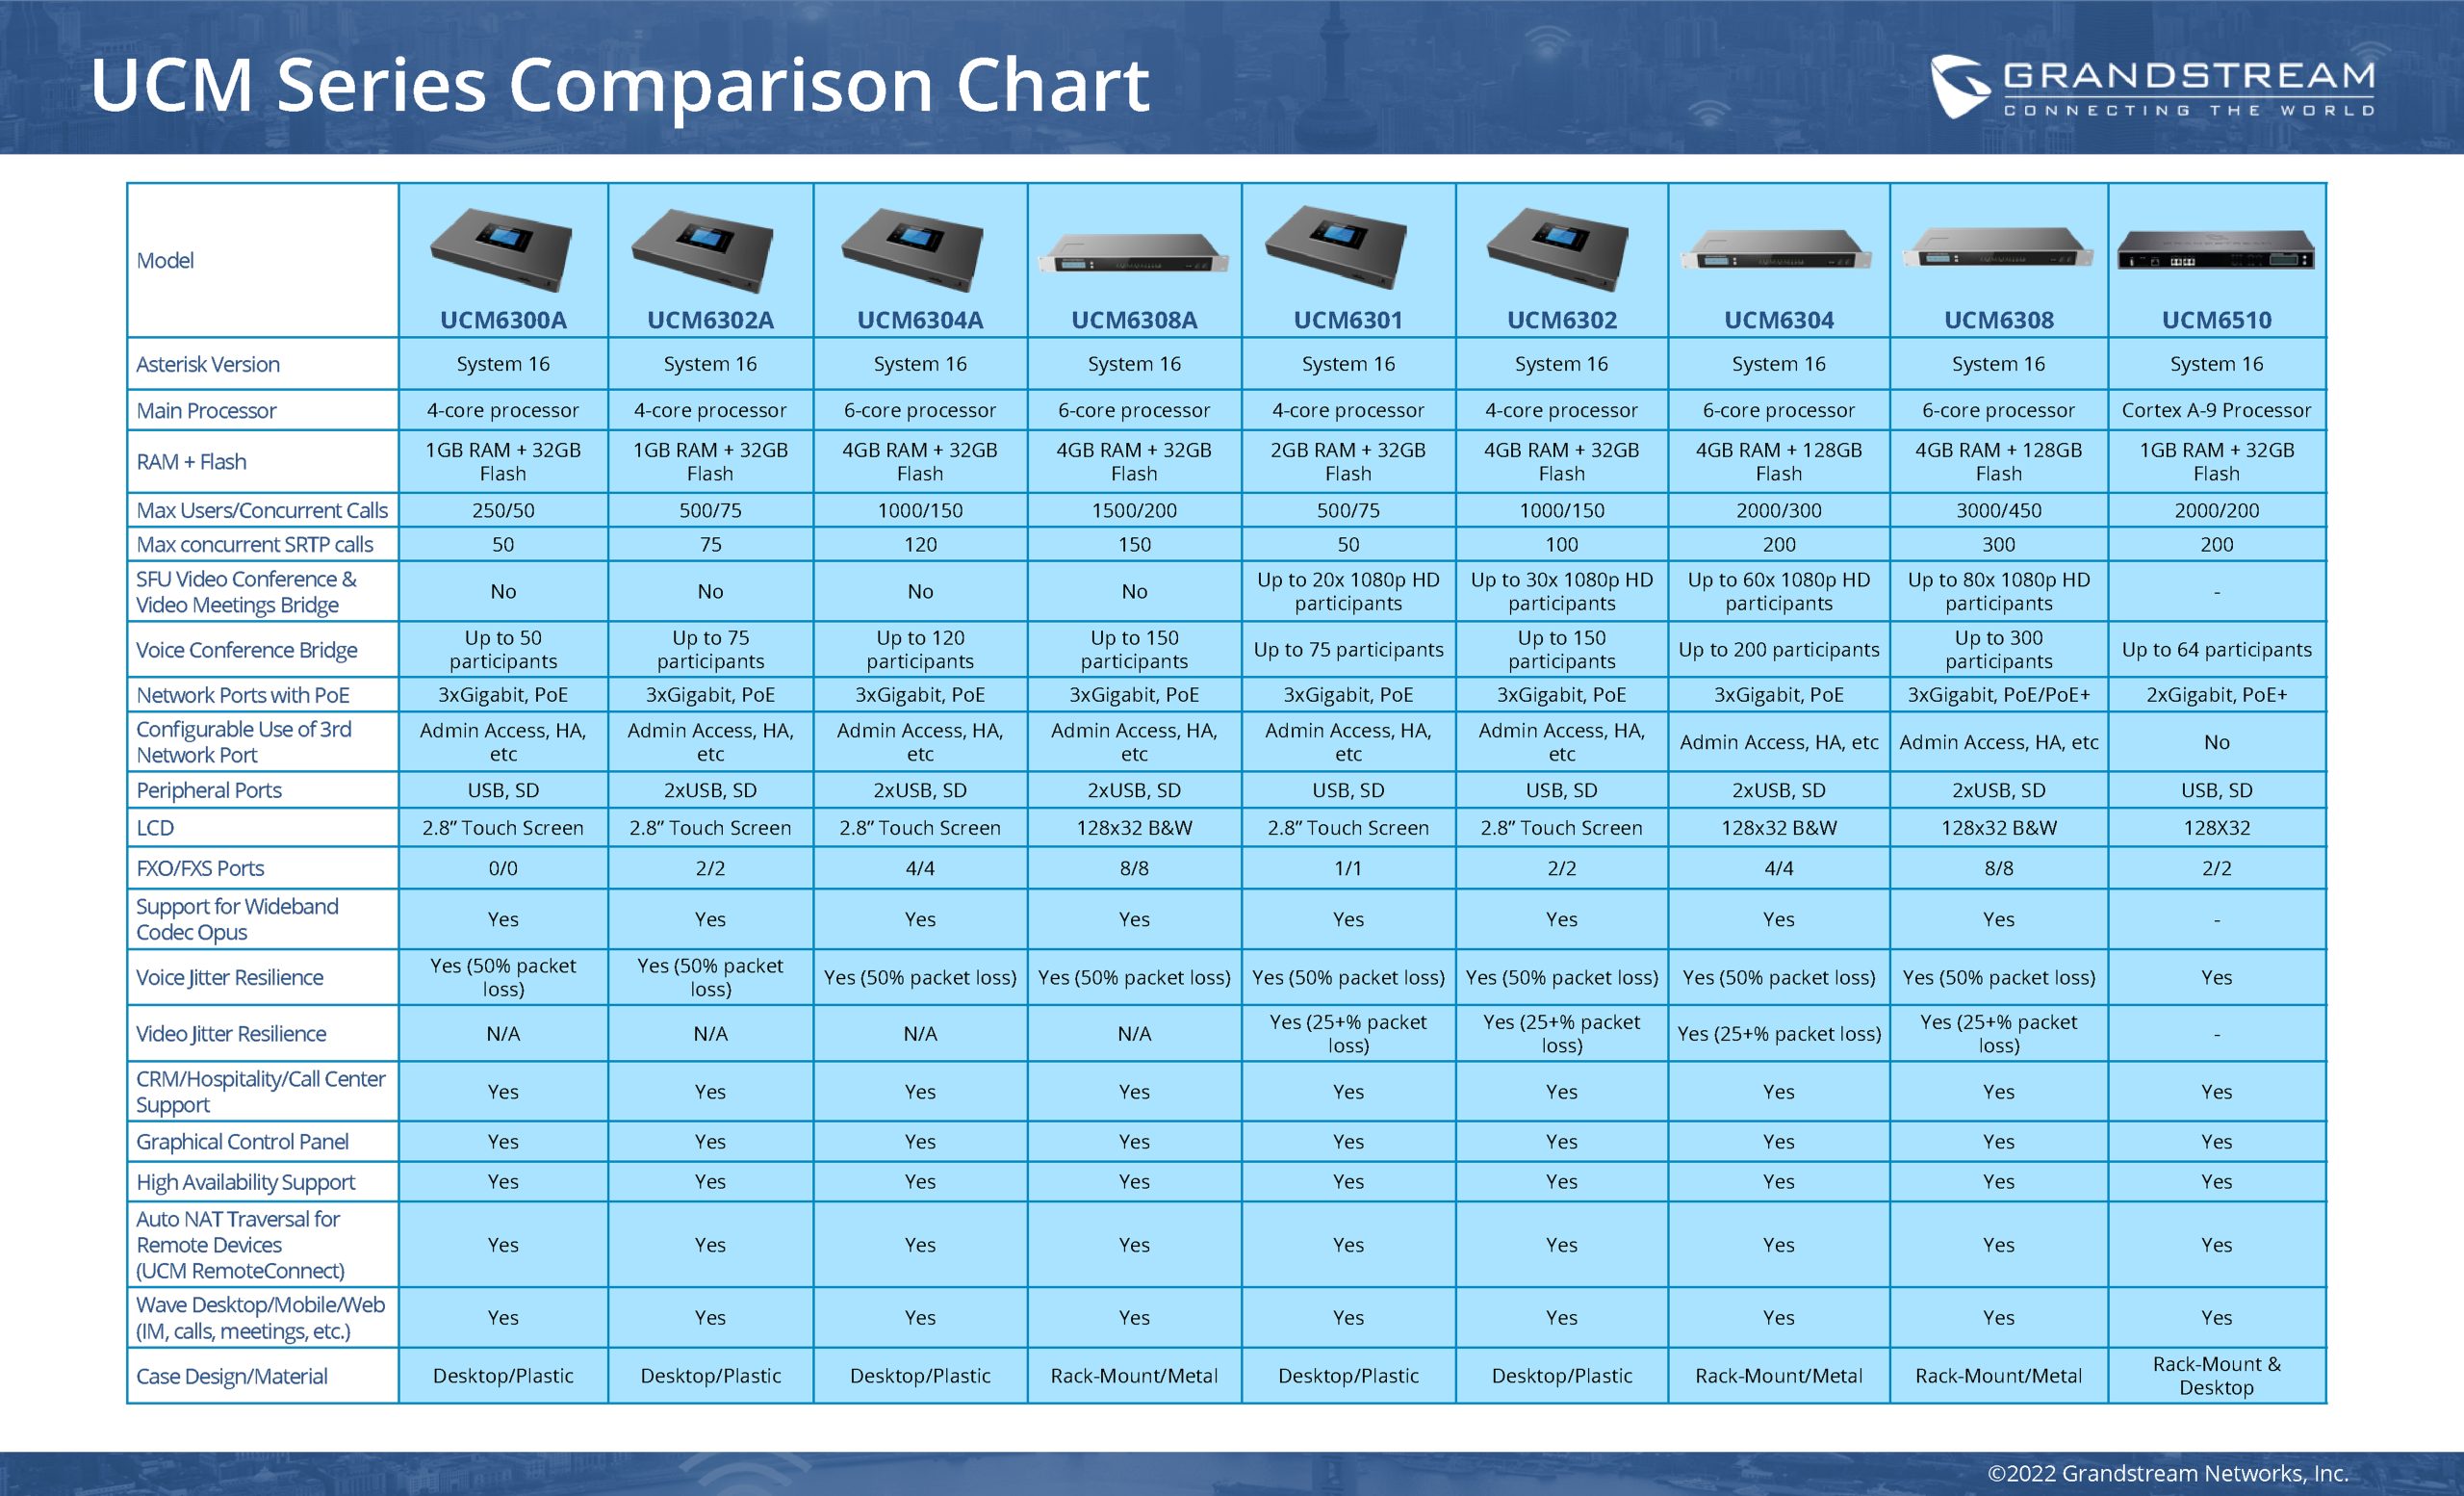 جدول مقایسه مرکز تلفن تحت شبکه گرنداستریم UCM6304A